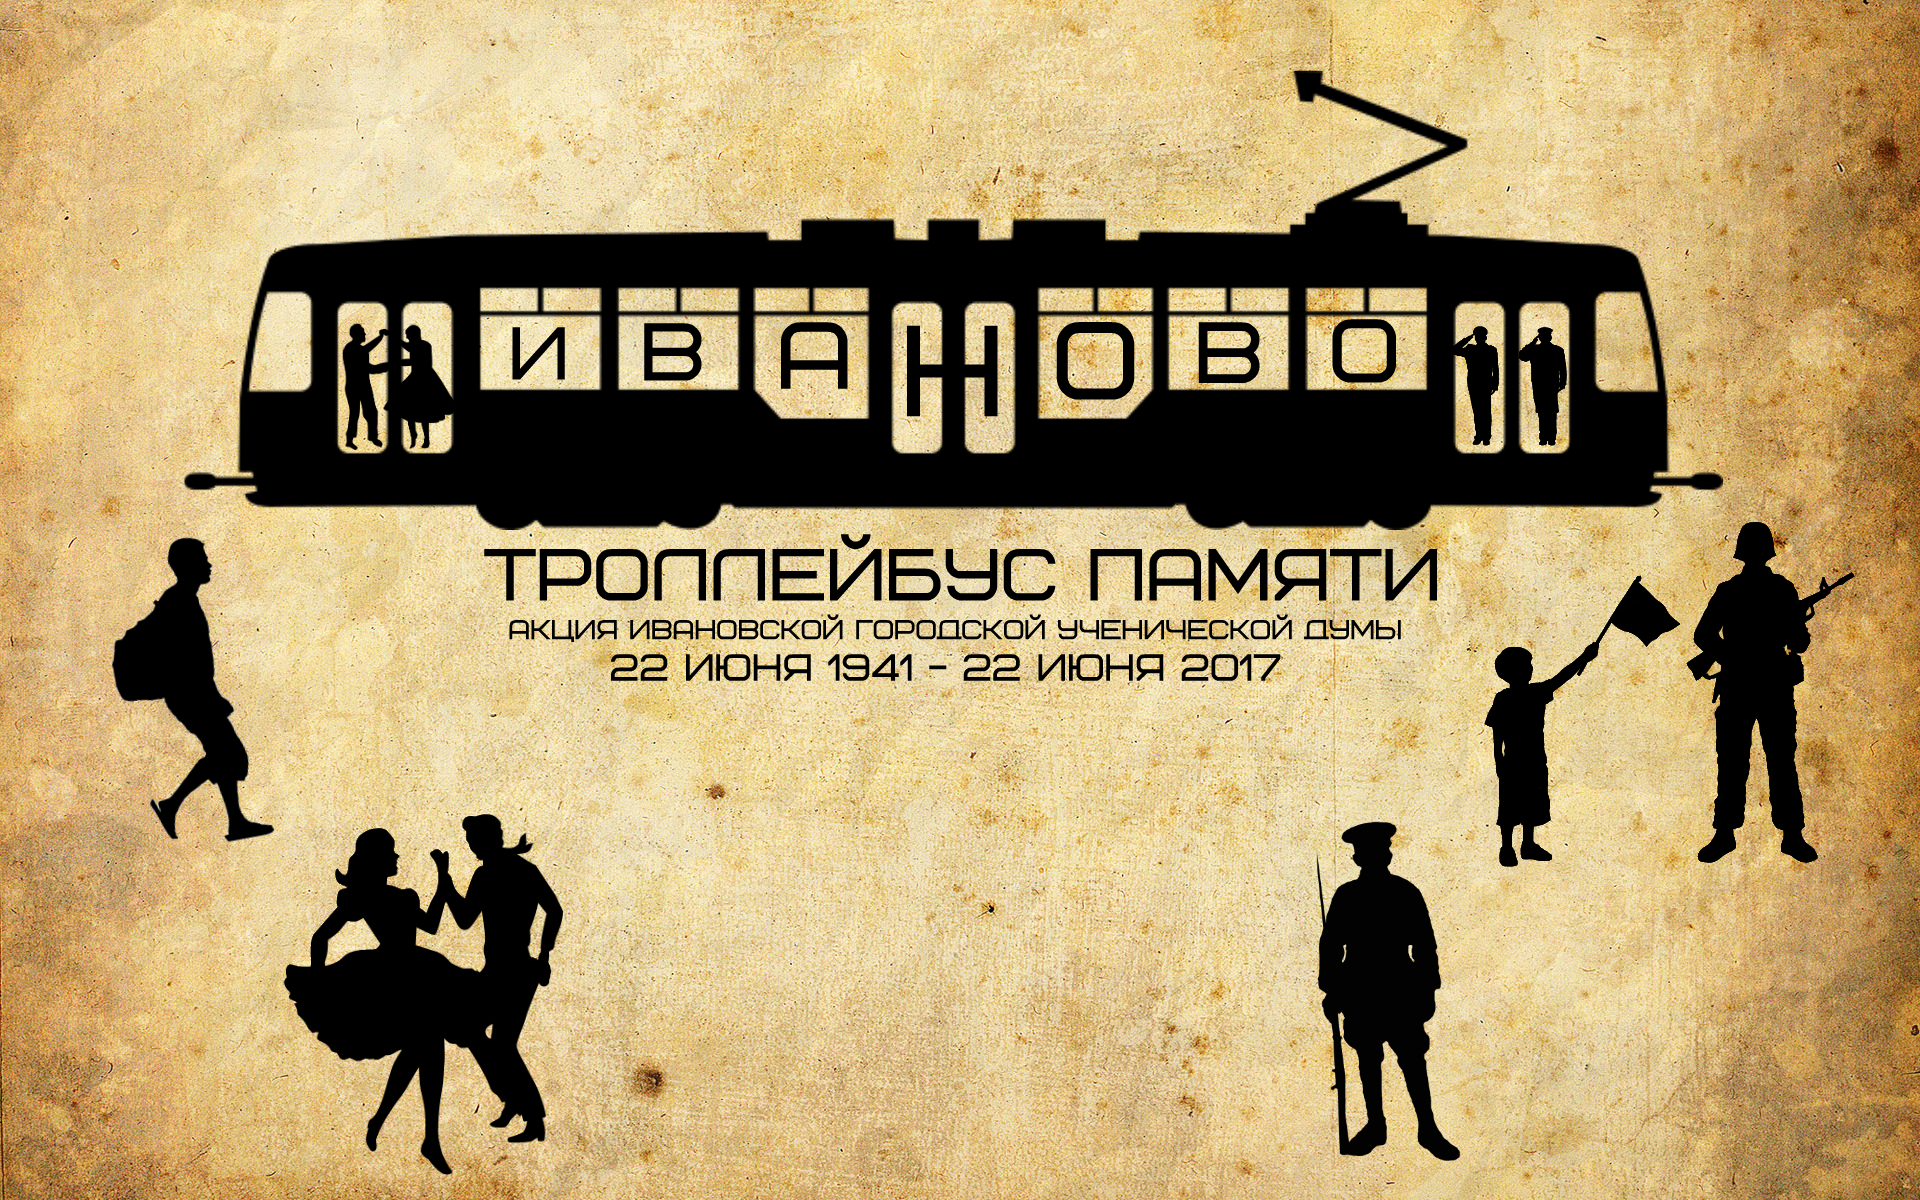 «Троллейбус памяти» проедет по городу Иваново